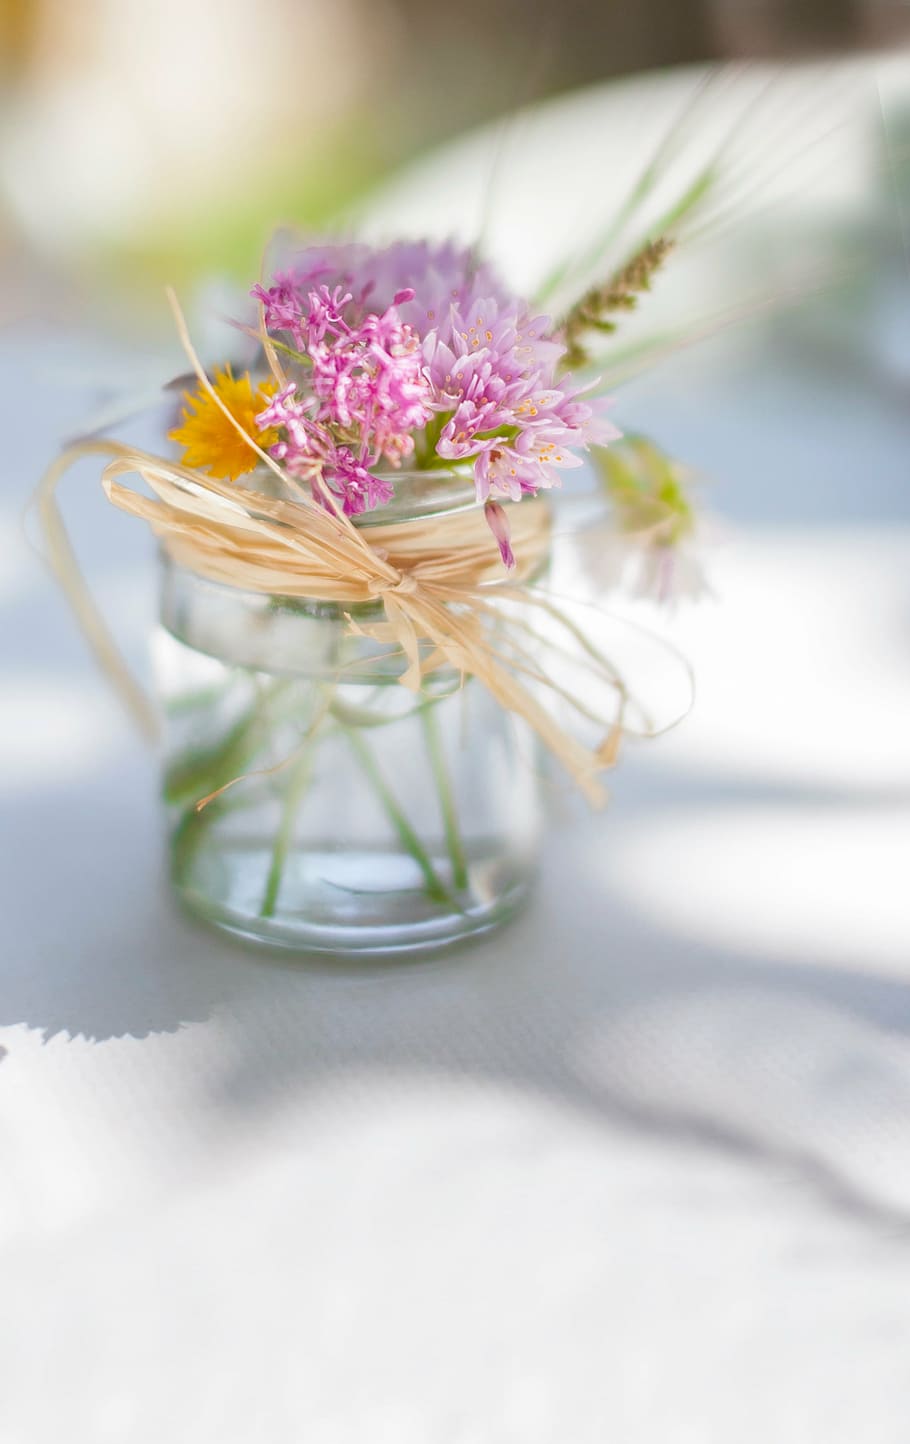 selektif, fokus fotografi, pink, bunga petaled, jelas, tabung kaca, putih, permukaan, bunga, kaca